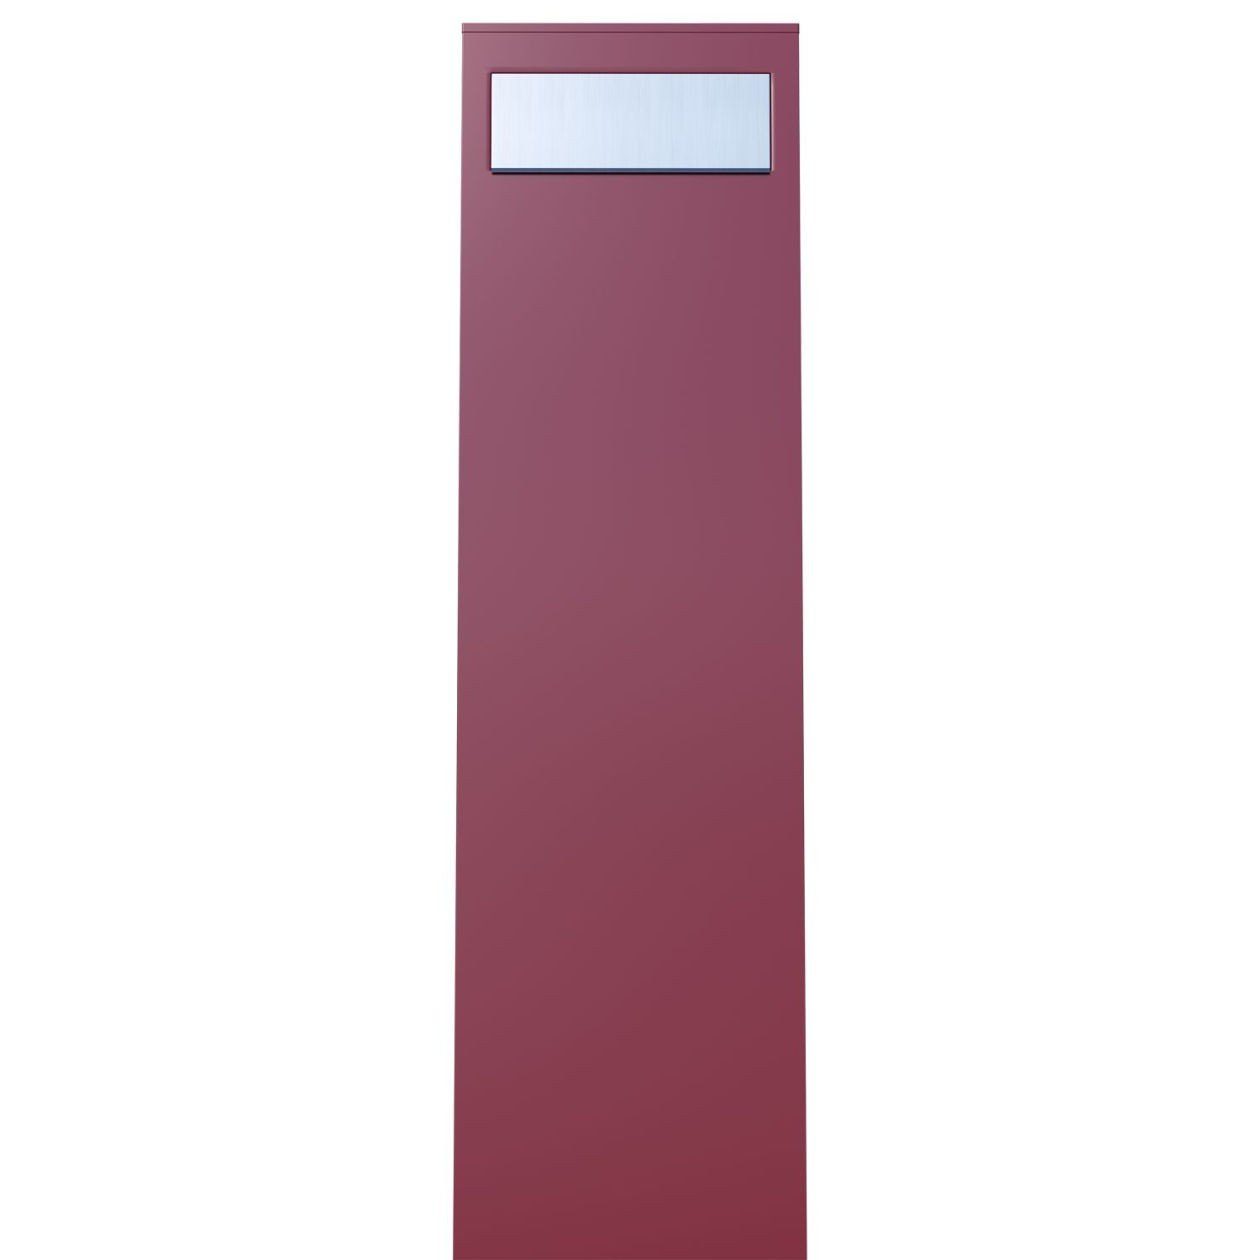 Bravios Briefkasten Standbriefkasten Edelstahlklappe Rot mit Monolith